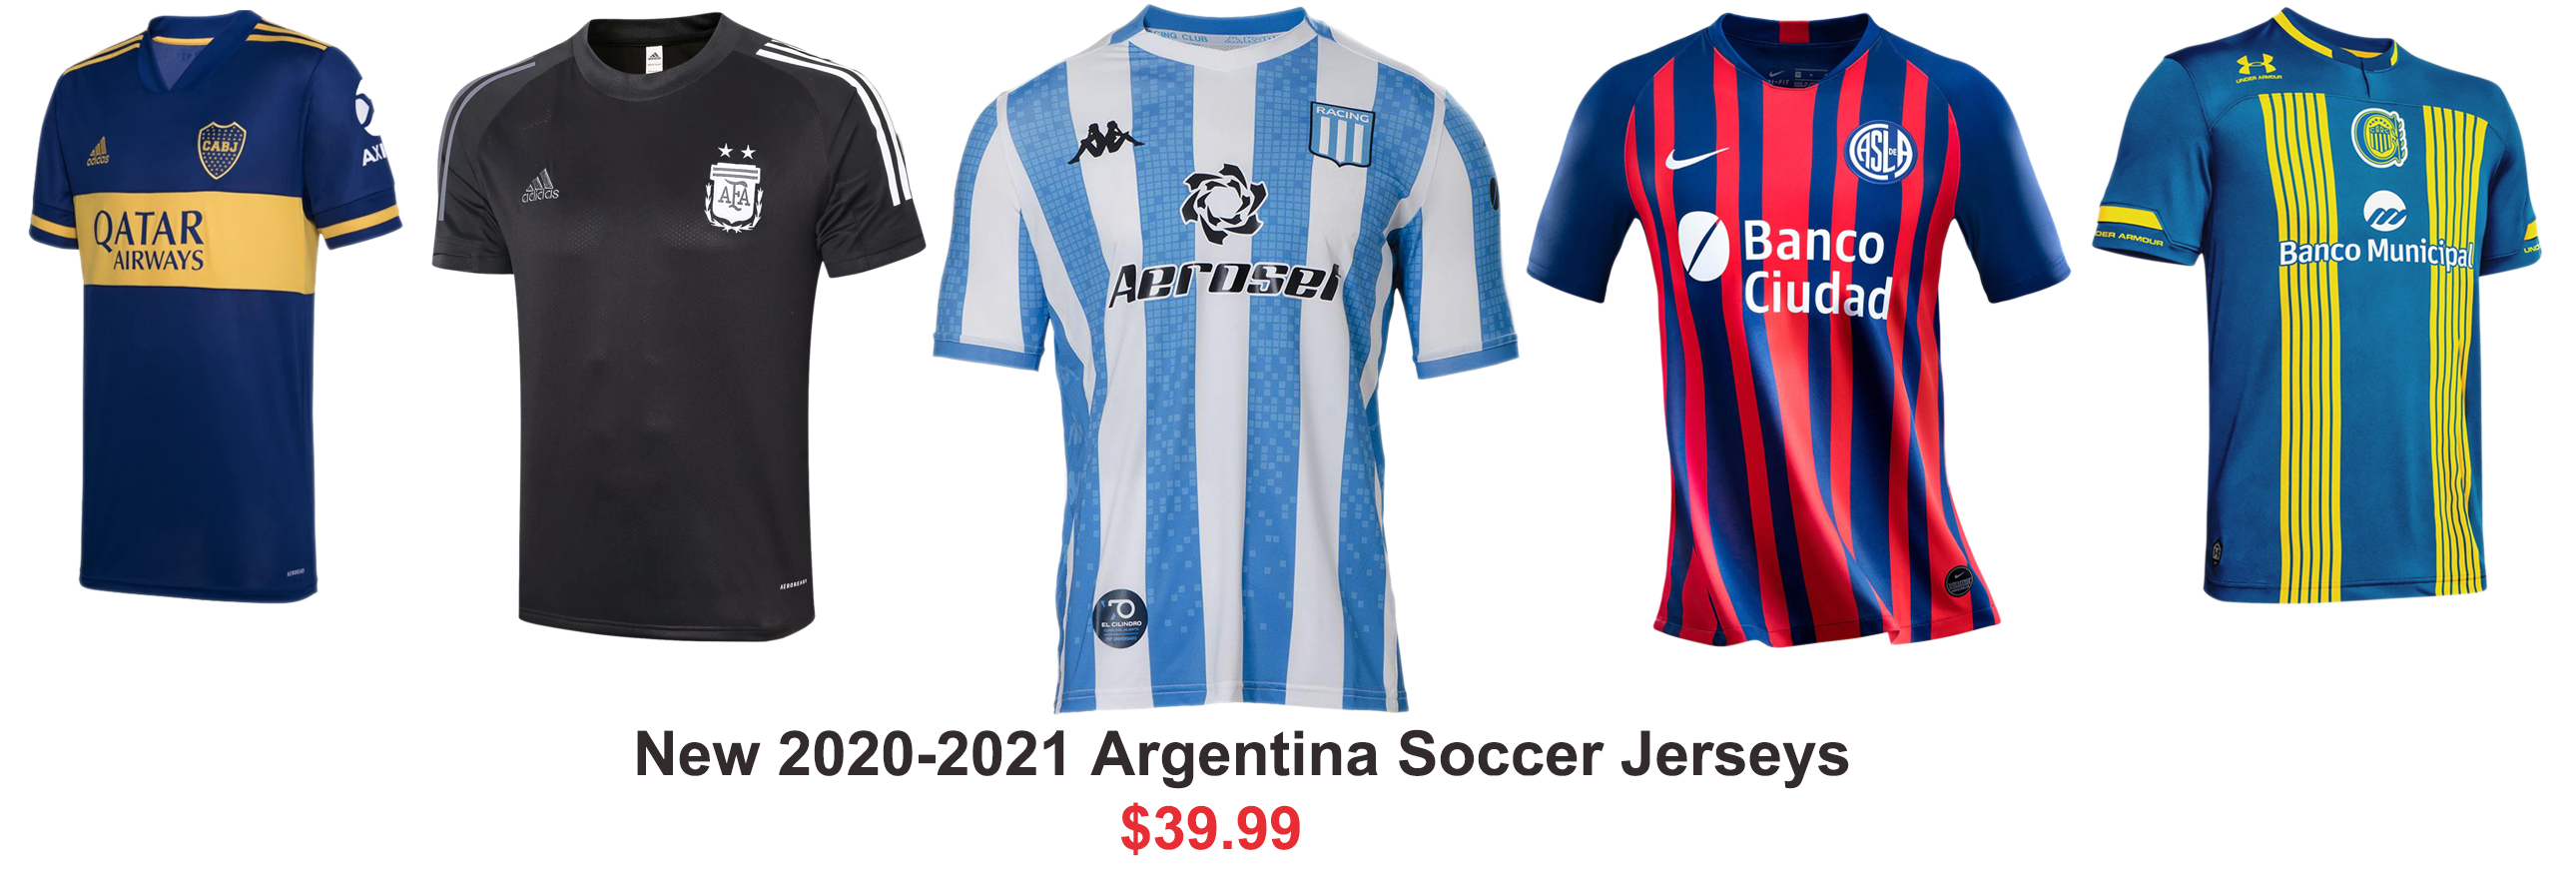 Argentina soccer jerseys